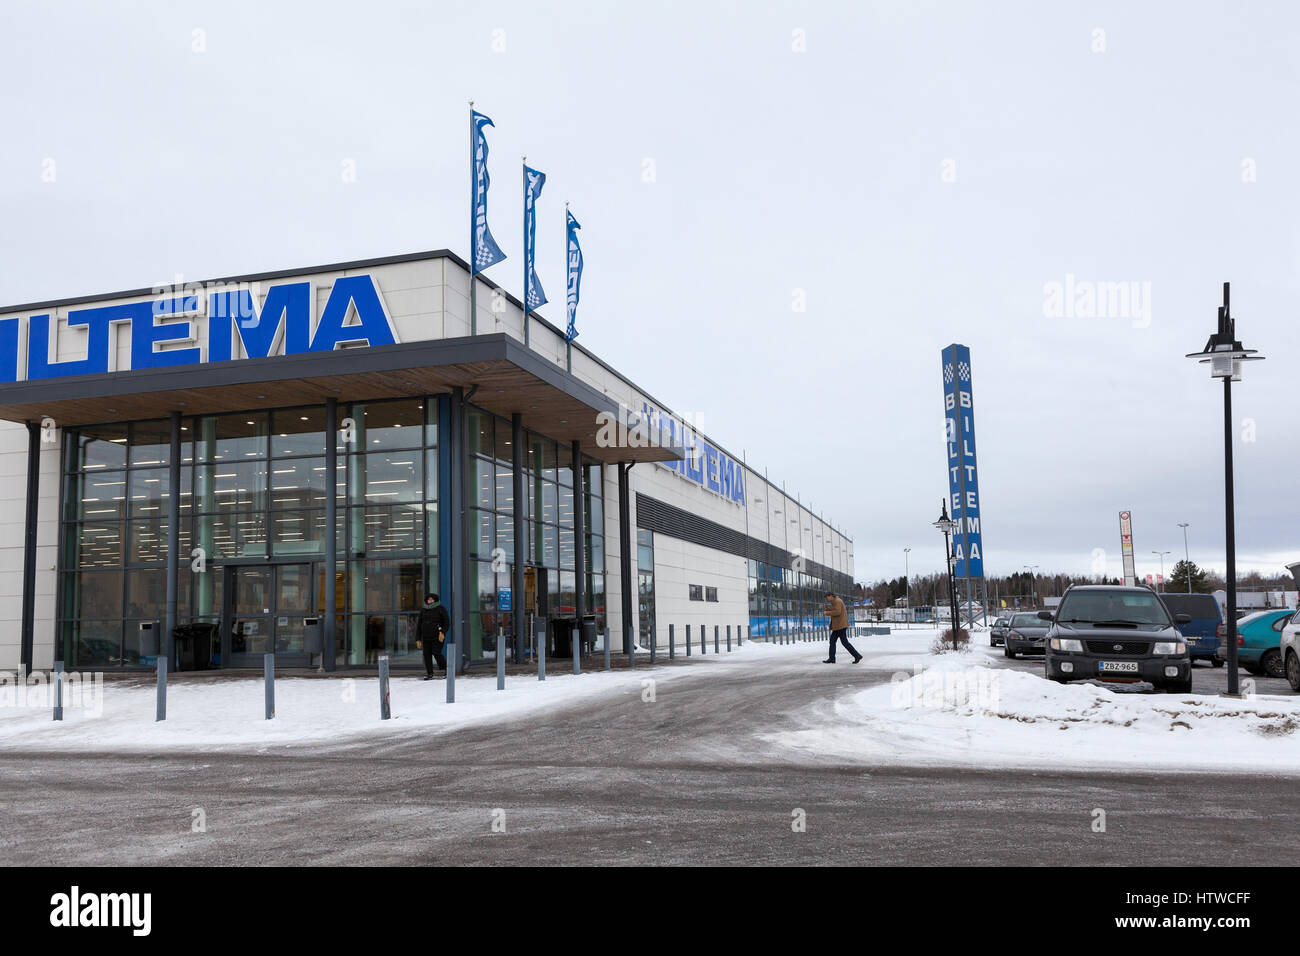 LAPPEENRANTA, FINLANDE - CIRCA FEB 2016 : Entrée et stationnement de l'Biltemma shop. Biltema est une chaîne suédoise de magasins de détail, spécialisé dans t Banque D'Images